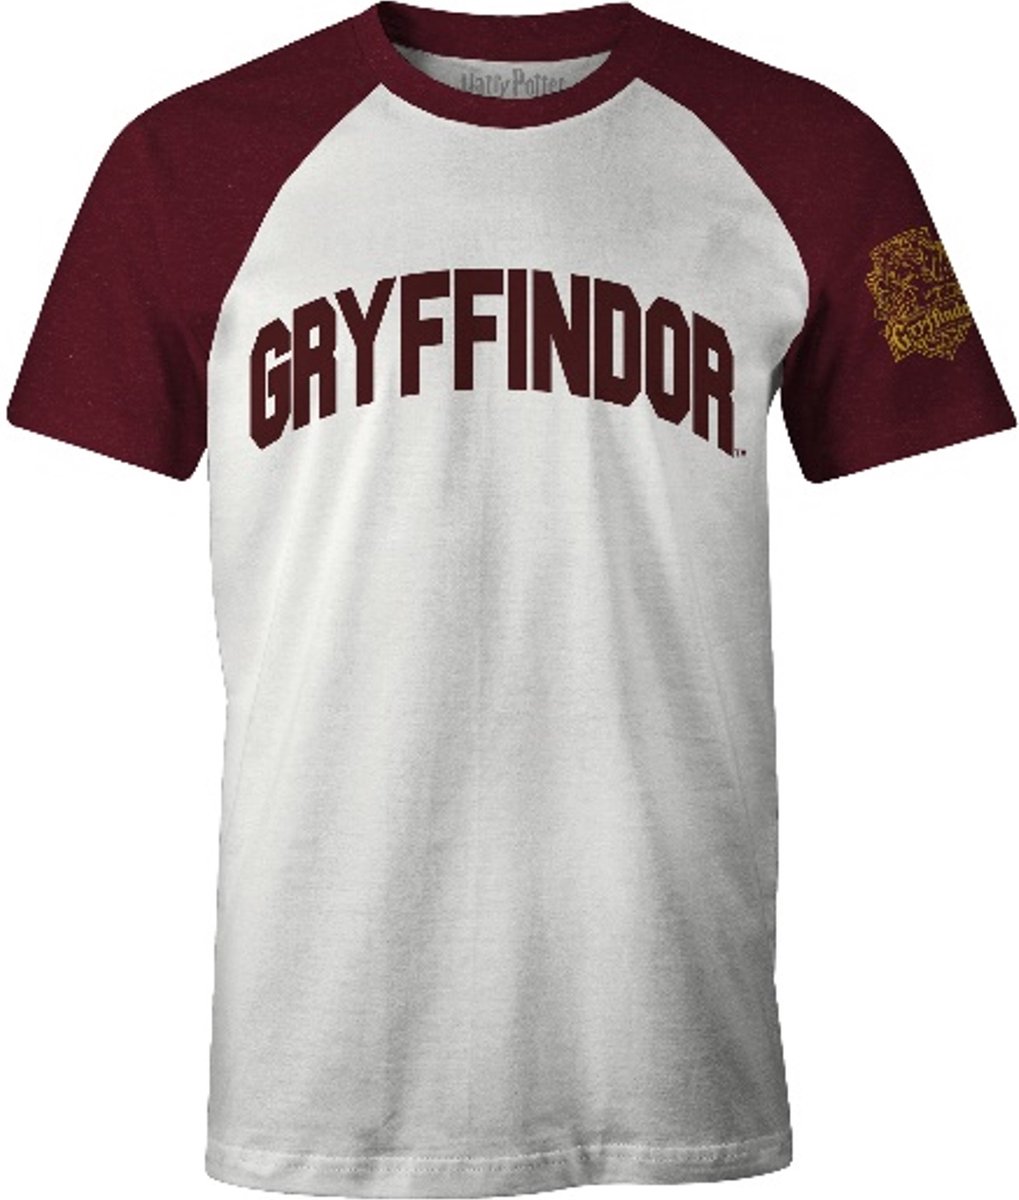 Harry Potter - Gryffindor - T-Shirt - Rood & Wit - L